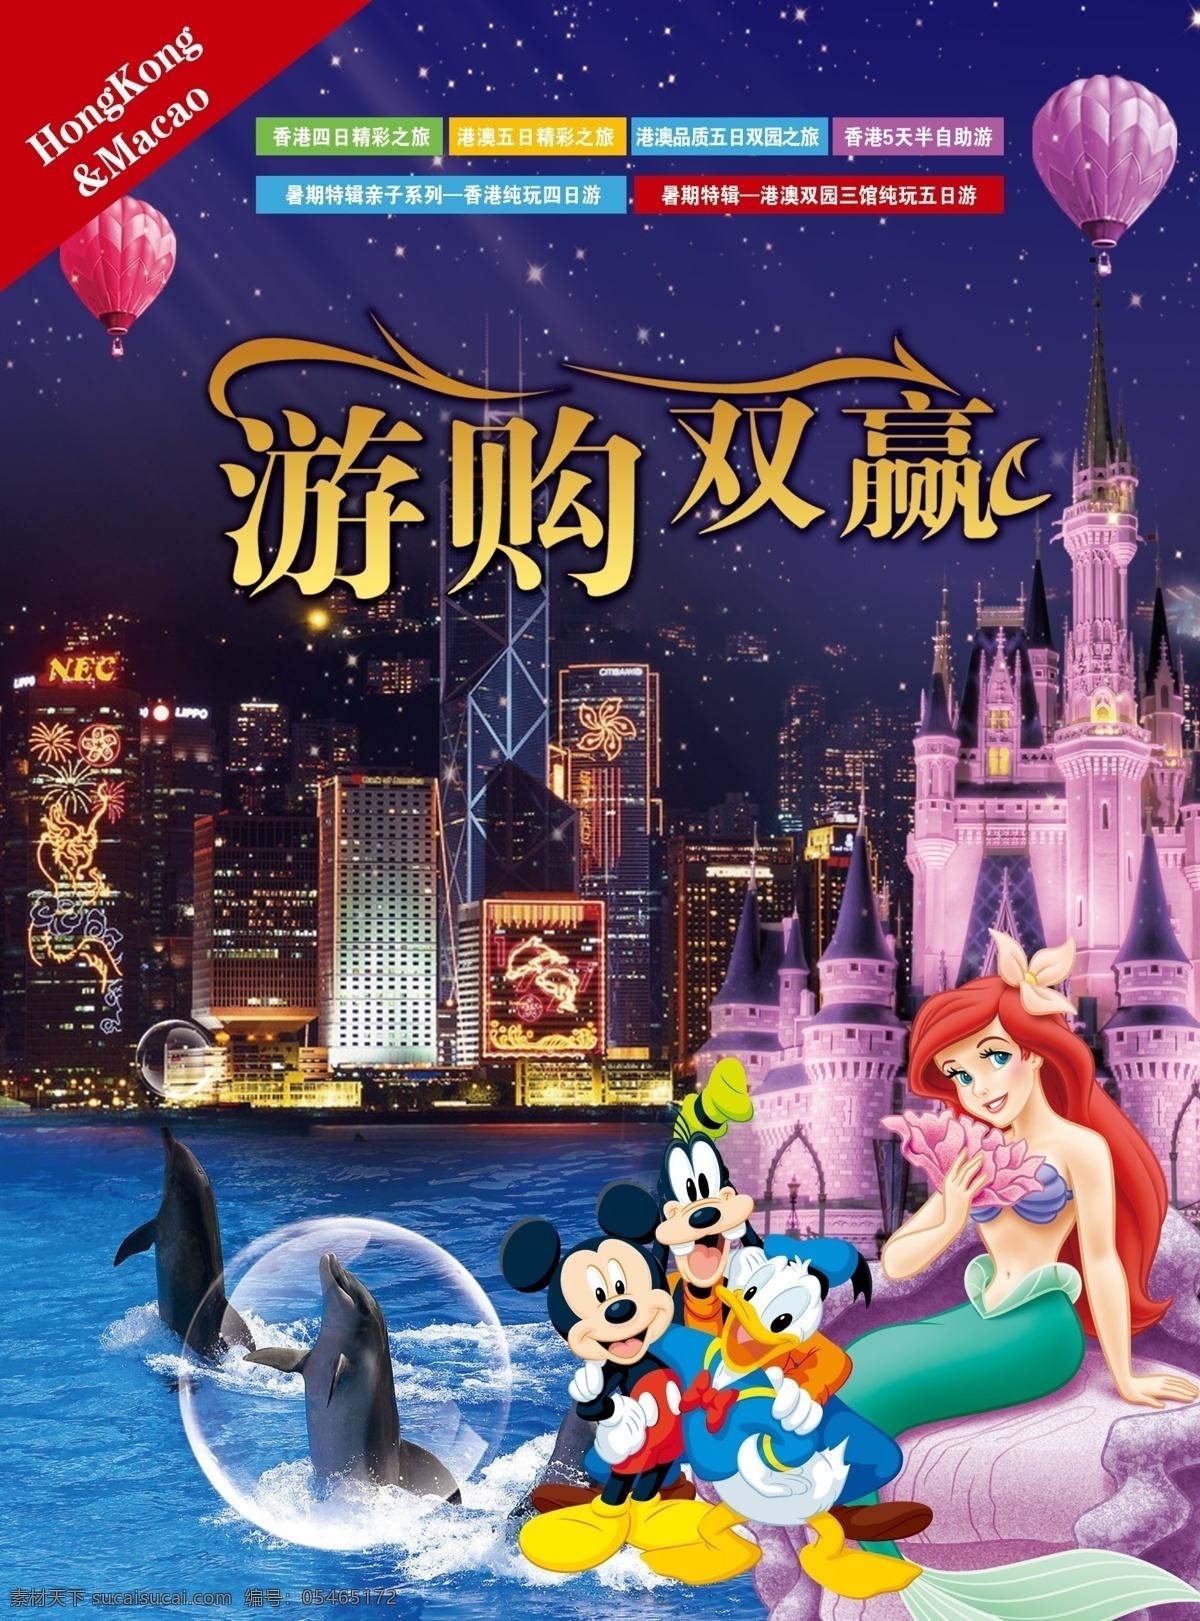 港澳游 港澳 旅游 迪士尼 米奇 海洋公园 旅游单页 香港 夜景 维多利亚港